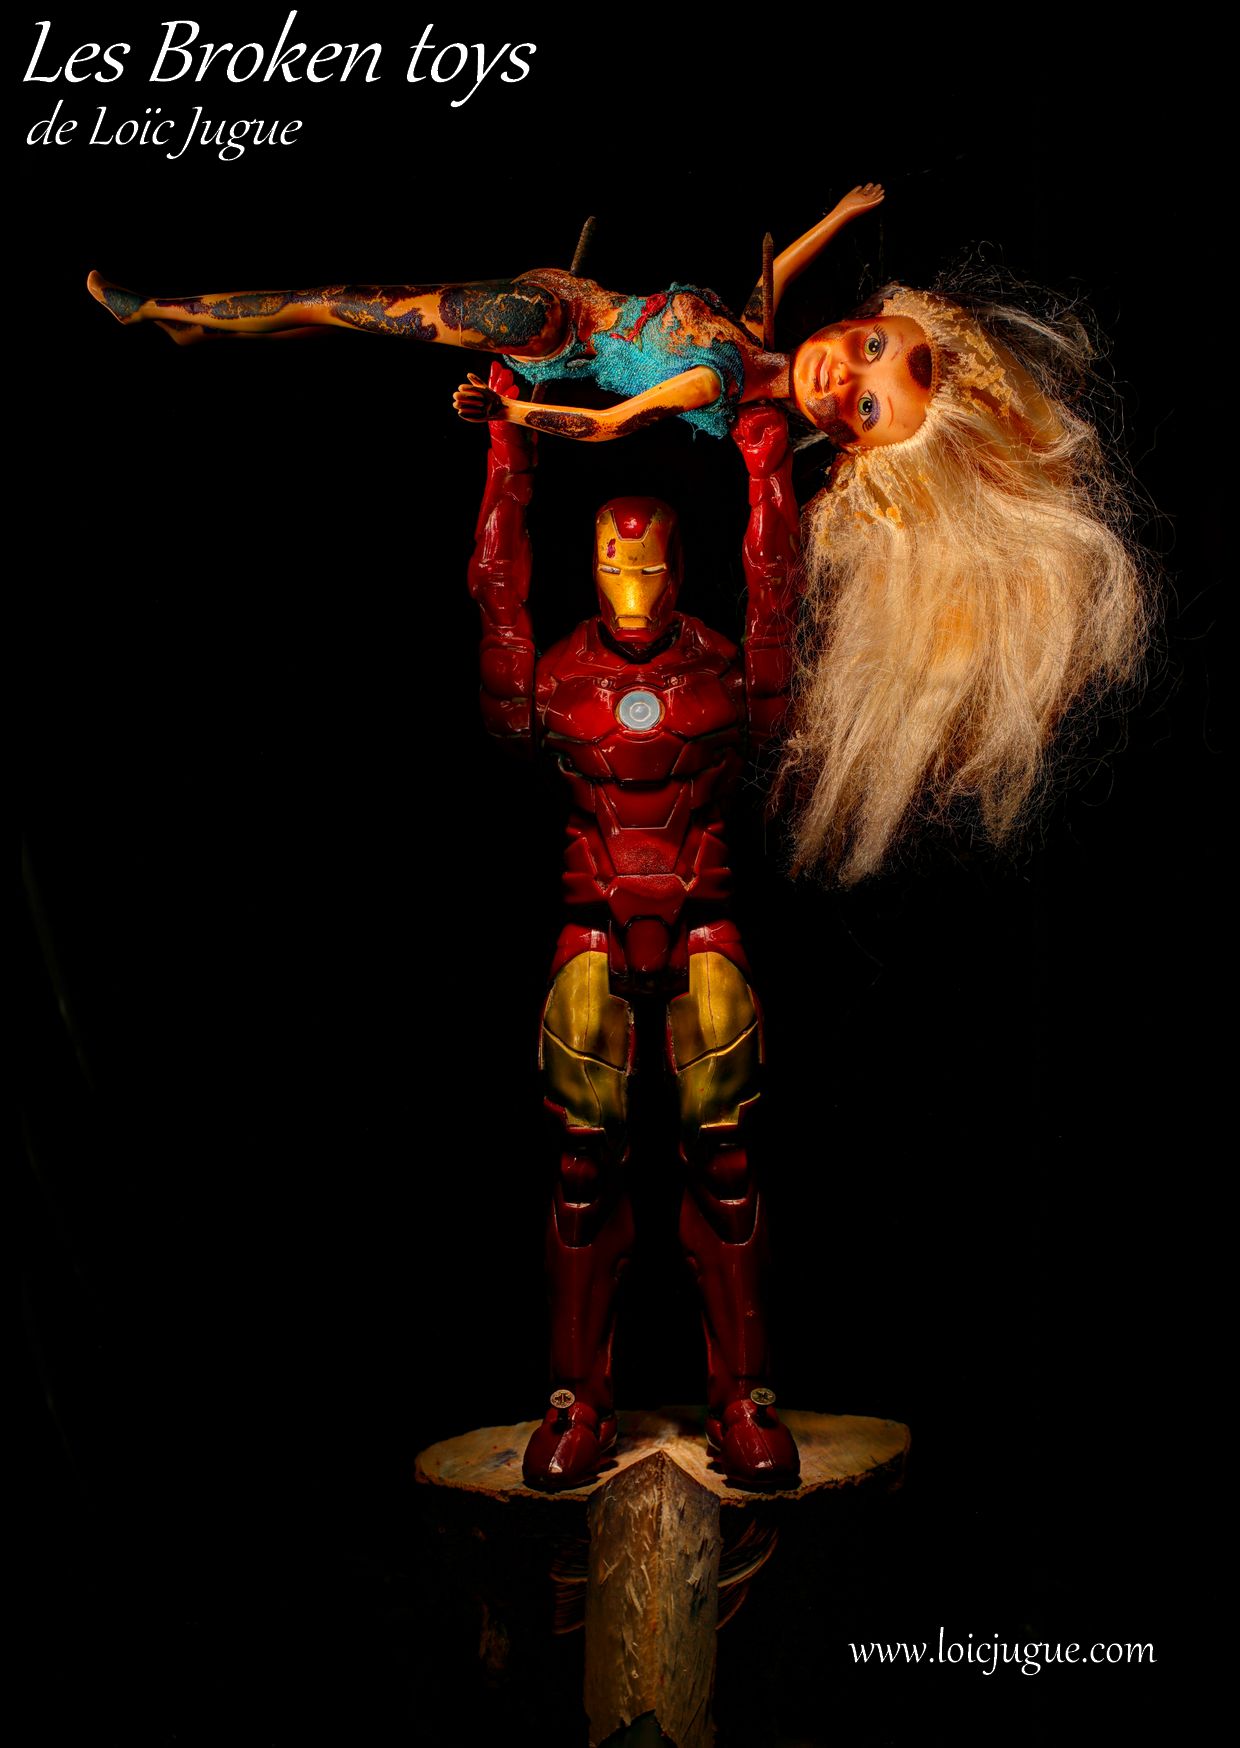 Les broken toys de Loïc Jugue: Iron man and the doll